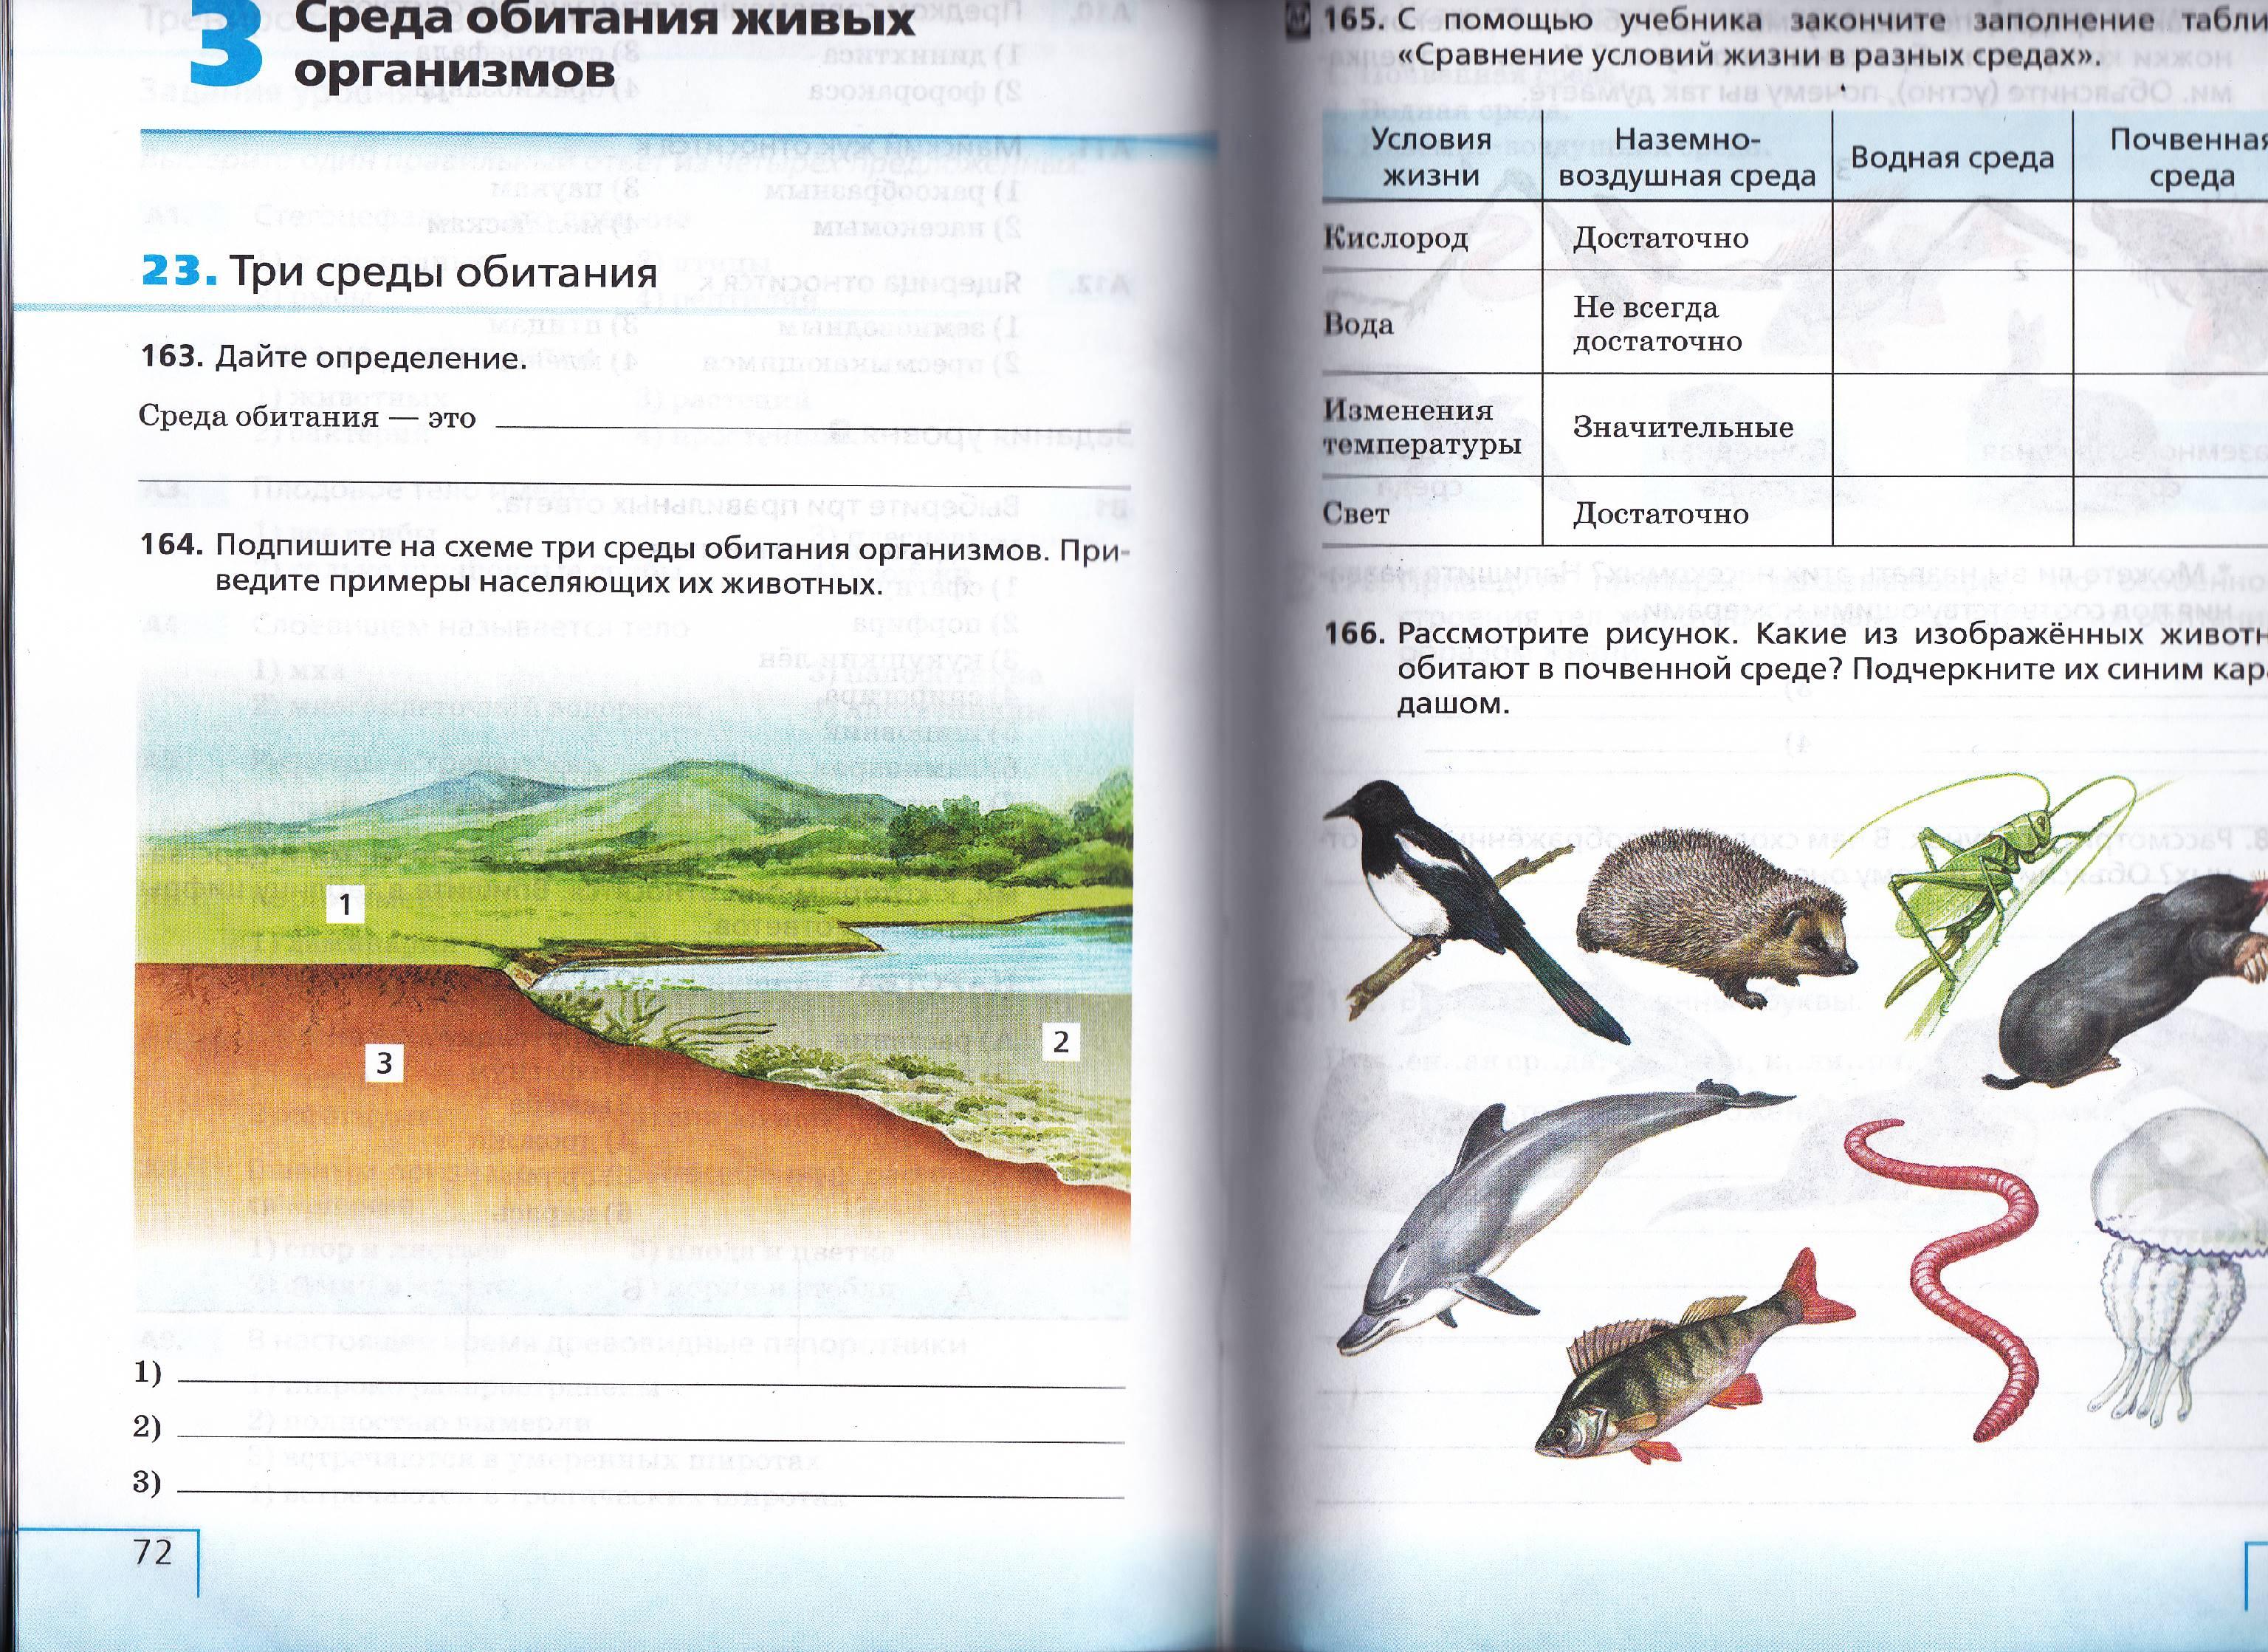 Среды обитания организмов 5 класс биология